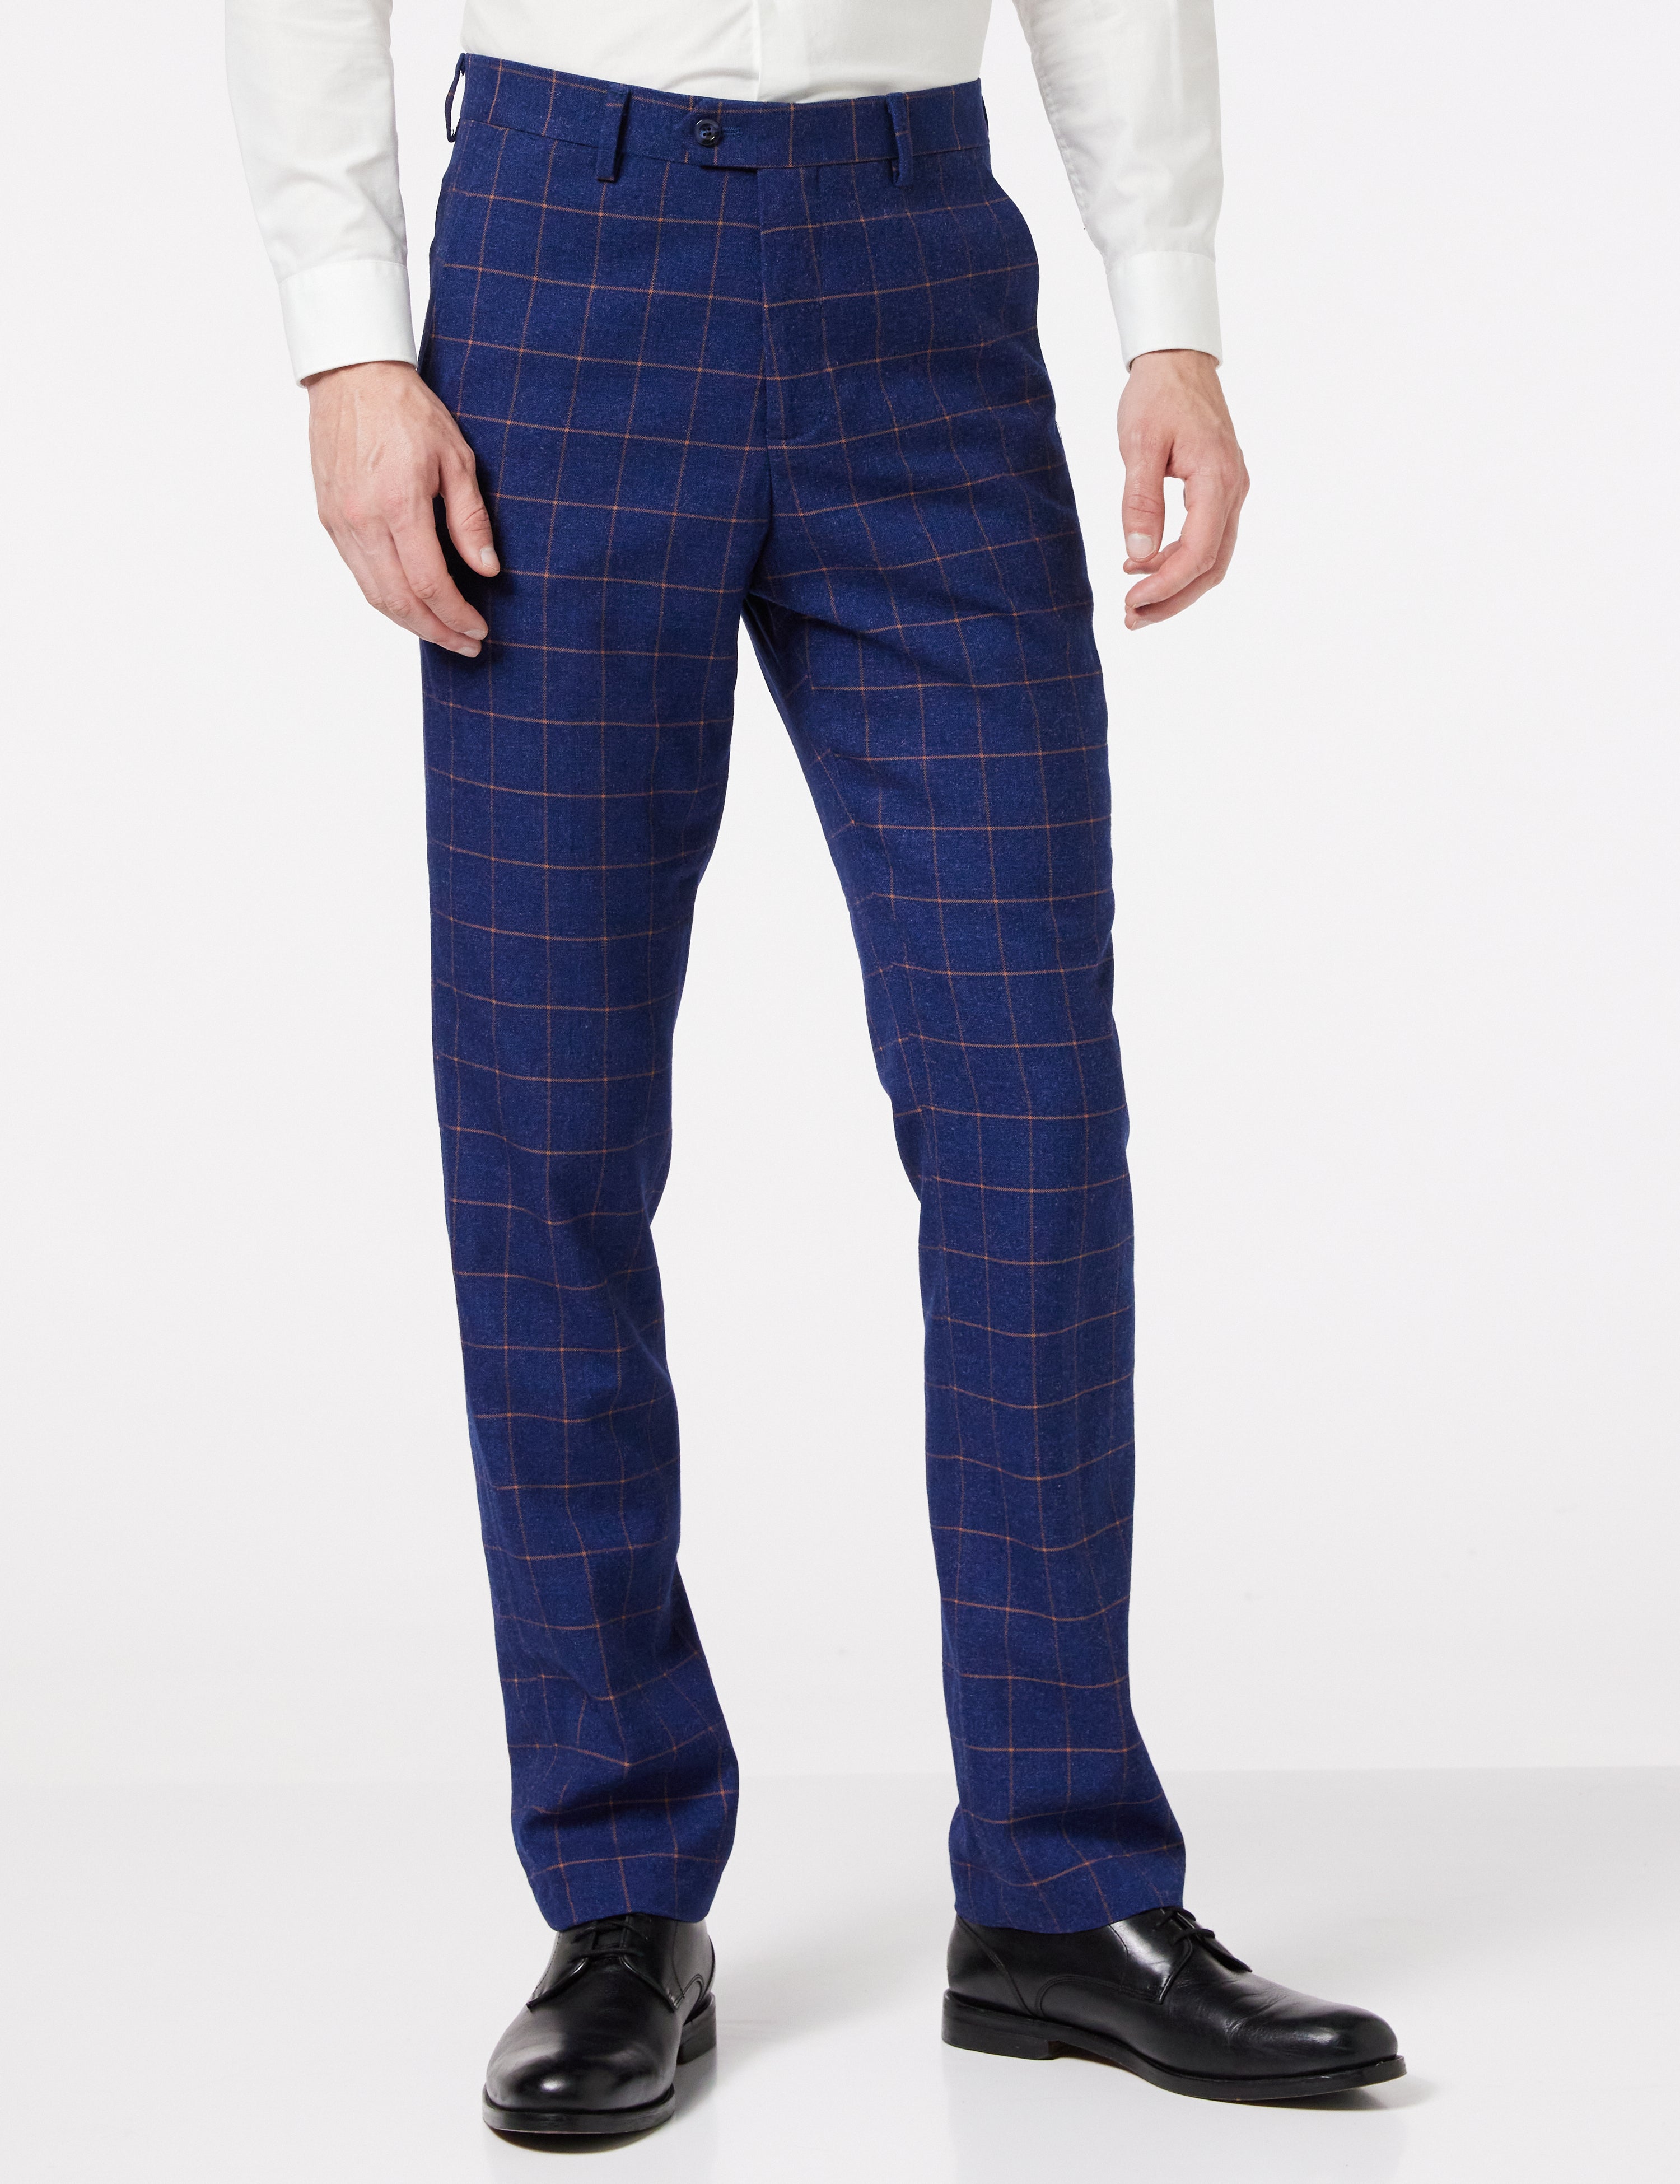 Dark stripe Men Formal Trousers 2023 New Fashion Belt Design Man Dress  Pants Simple Slim Business Casual Suit Pant Plus Size 38